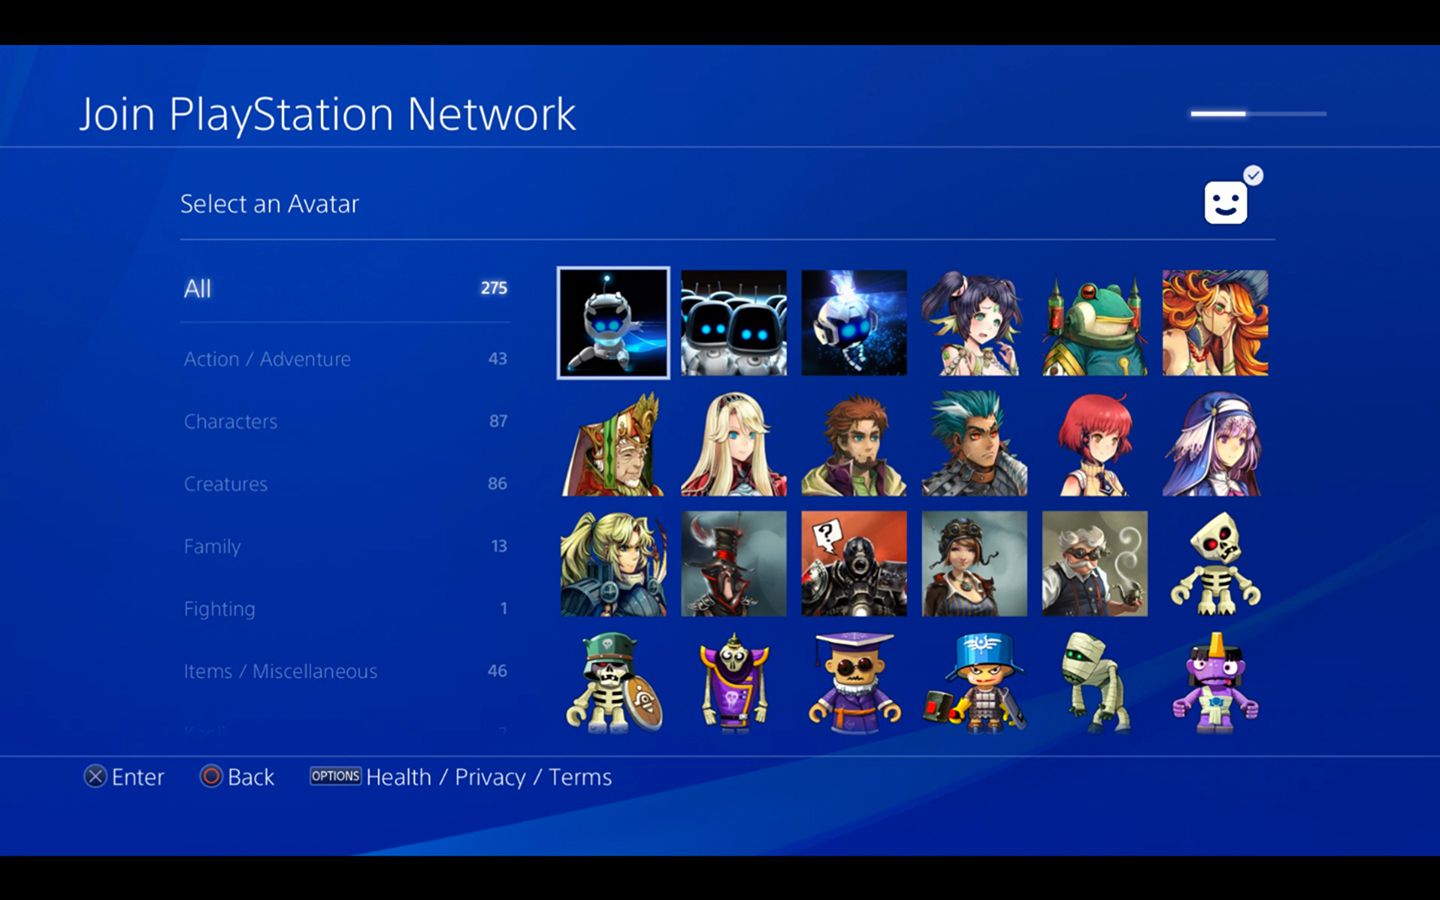 Avatarvalssida för att gå med i PlayStation Network på PS4